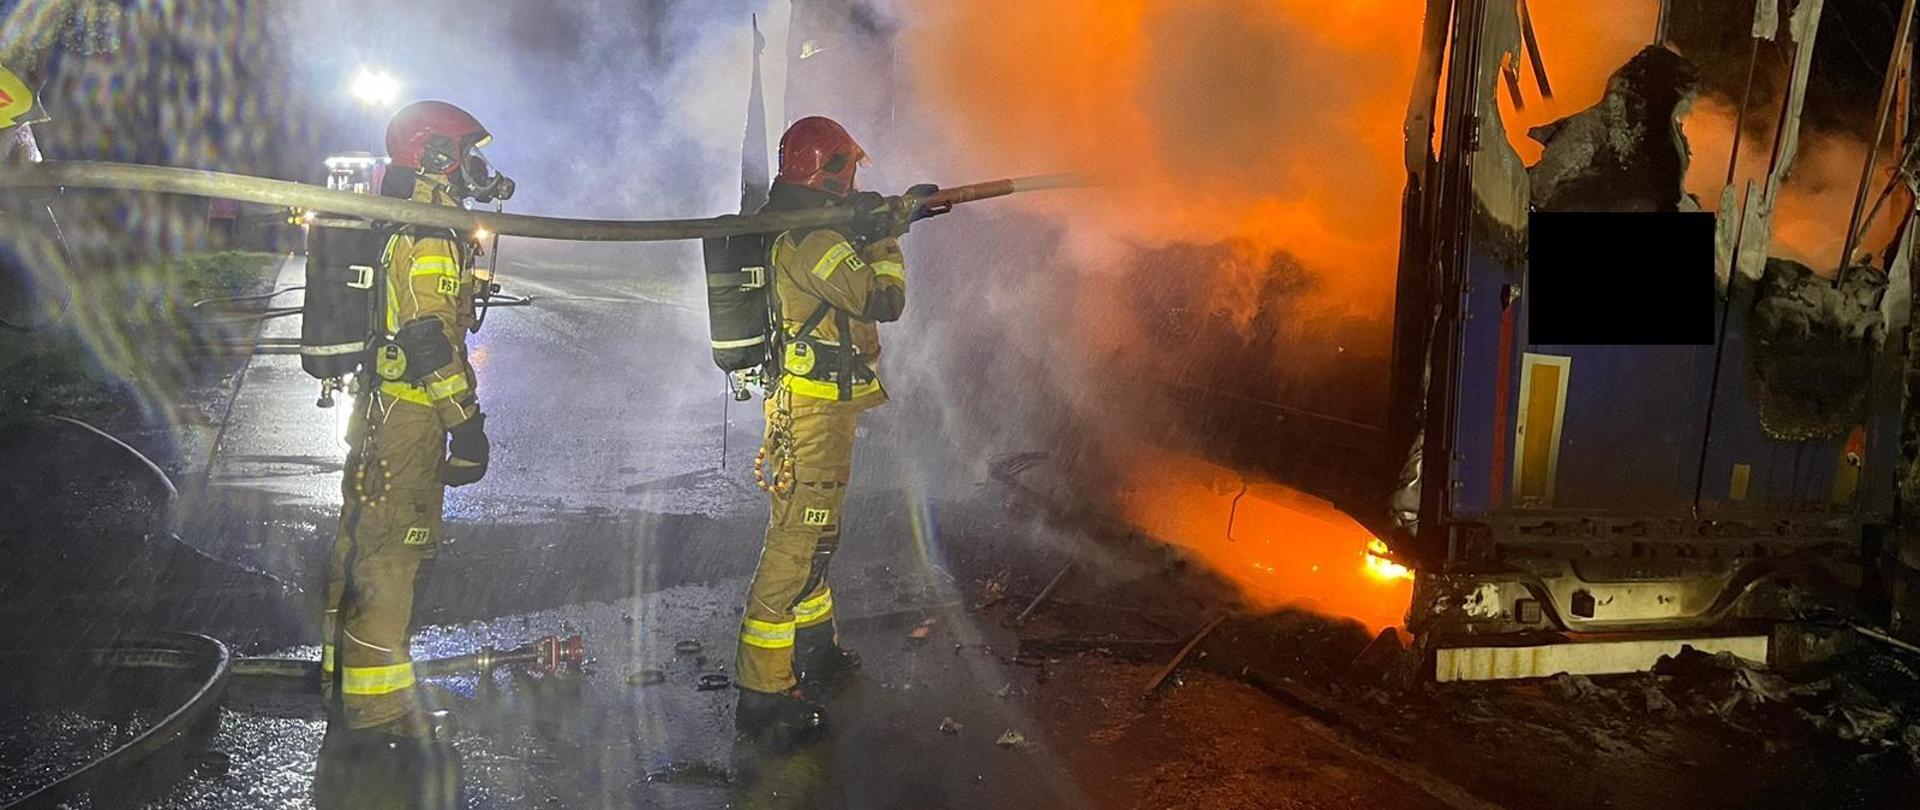 Na zdjęciu widnieją strażacy podczas prowadzenia działań ratowniczych związanych z pożarem przyczepy ciężarowej. 